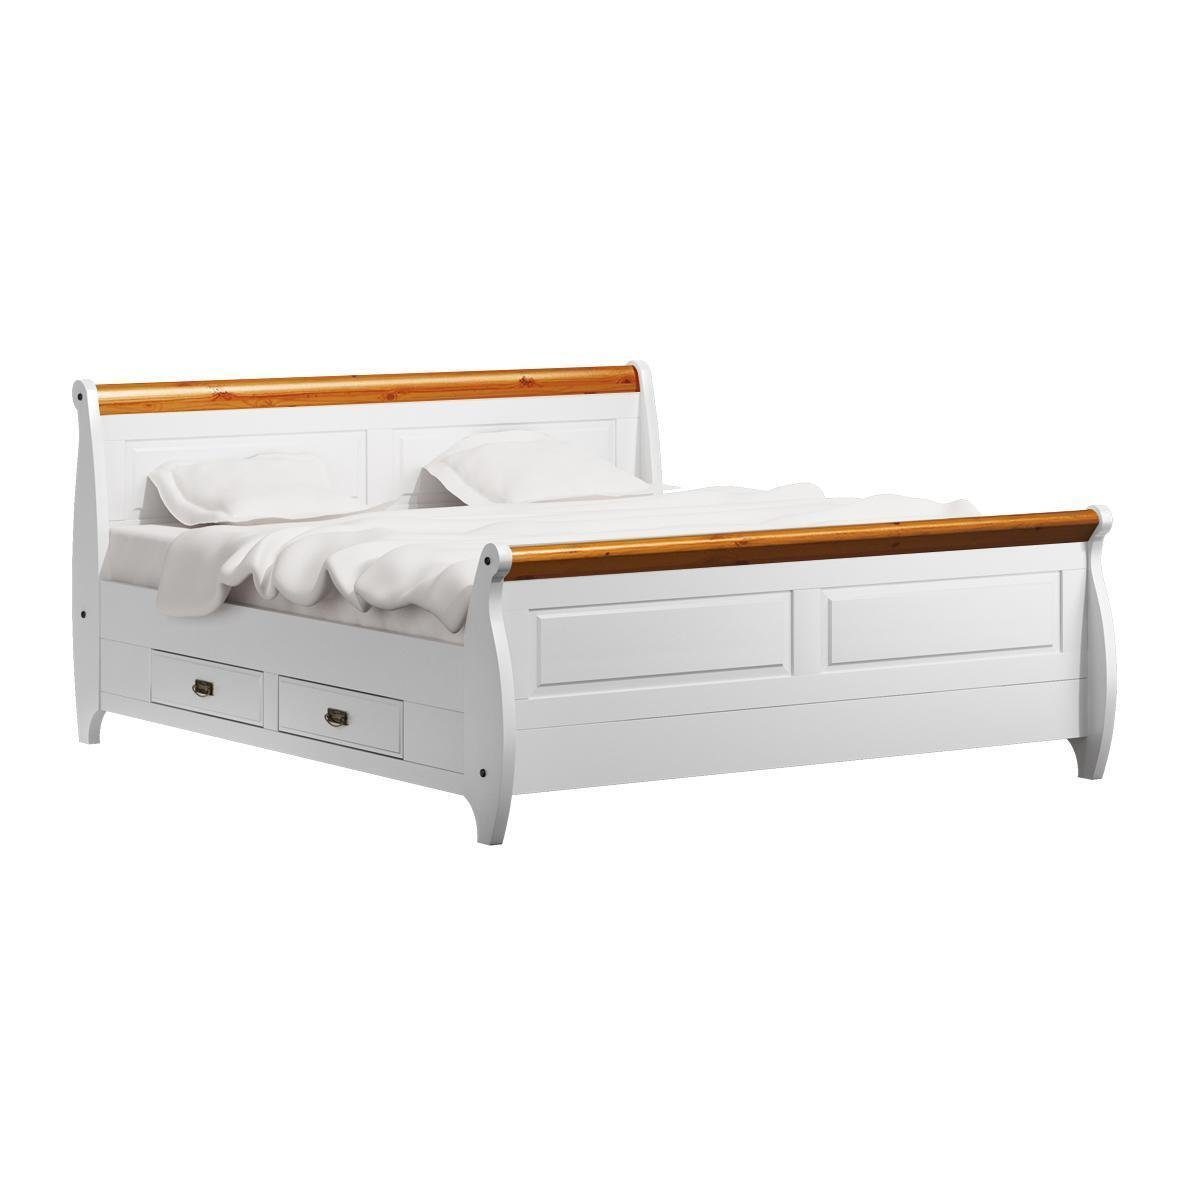 JVmoebel Bett Luxus Bett Doppelbett Landhaus Stil Doppelbetten Weiß Bauern Betten